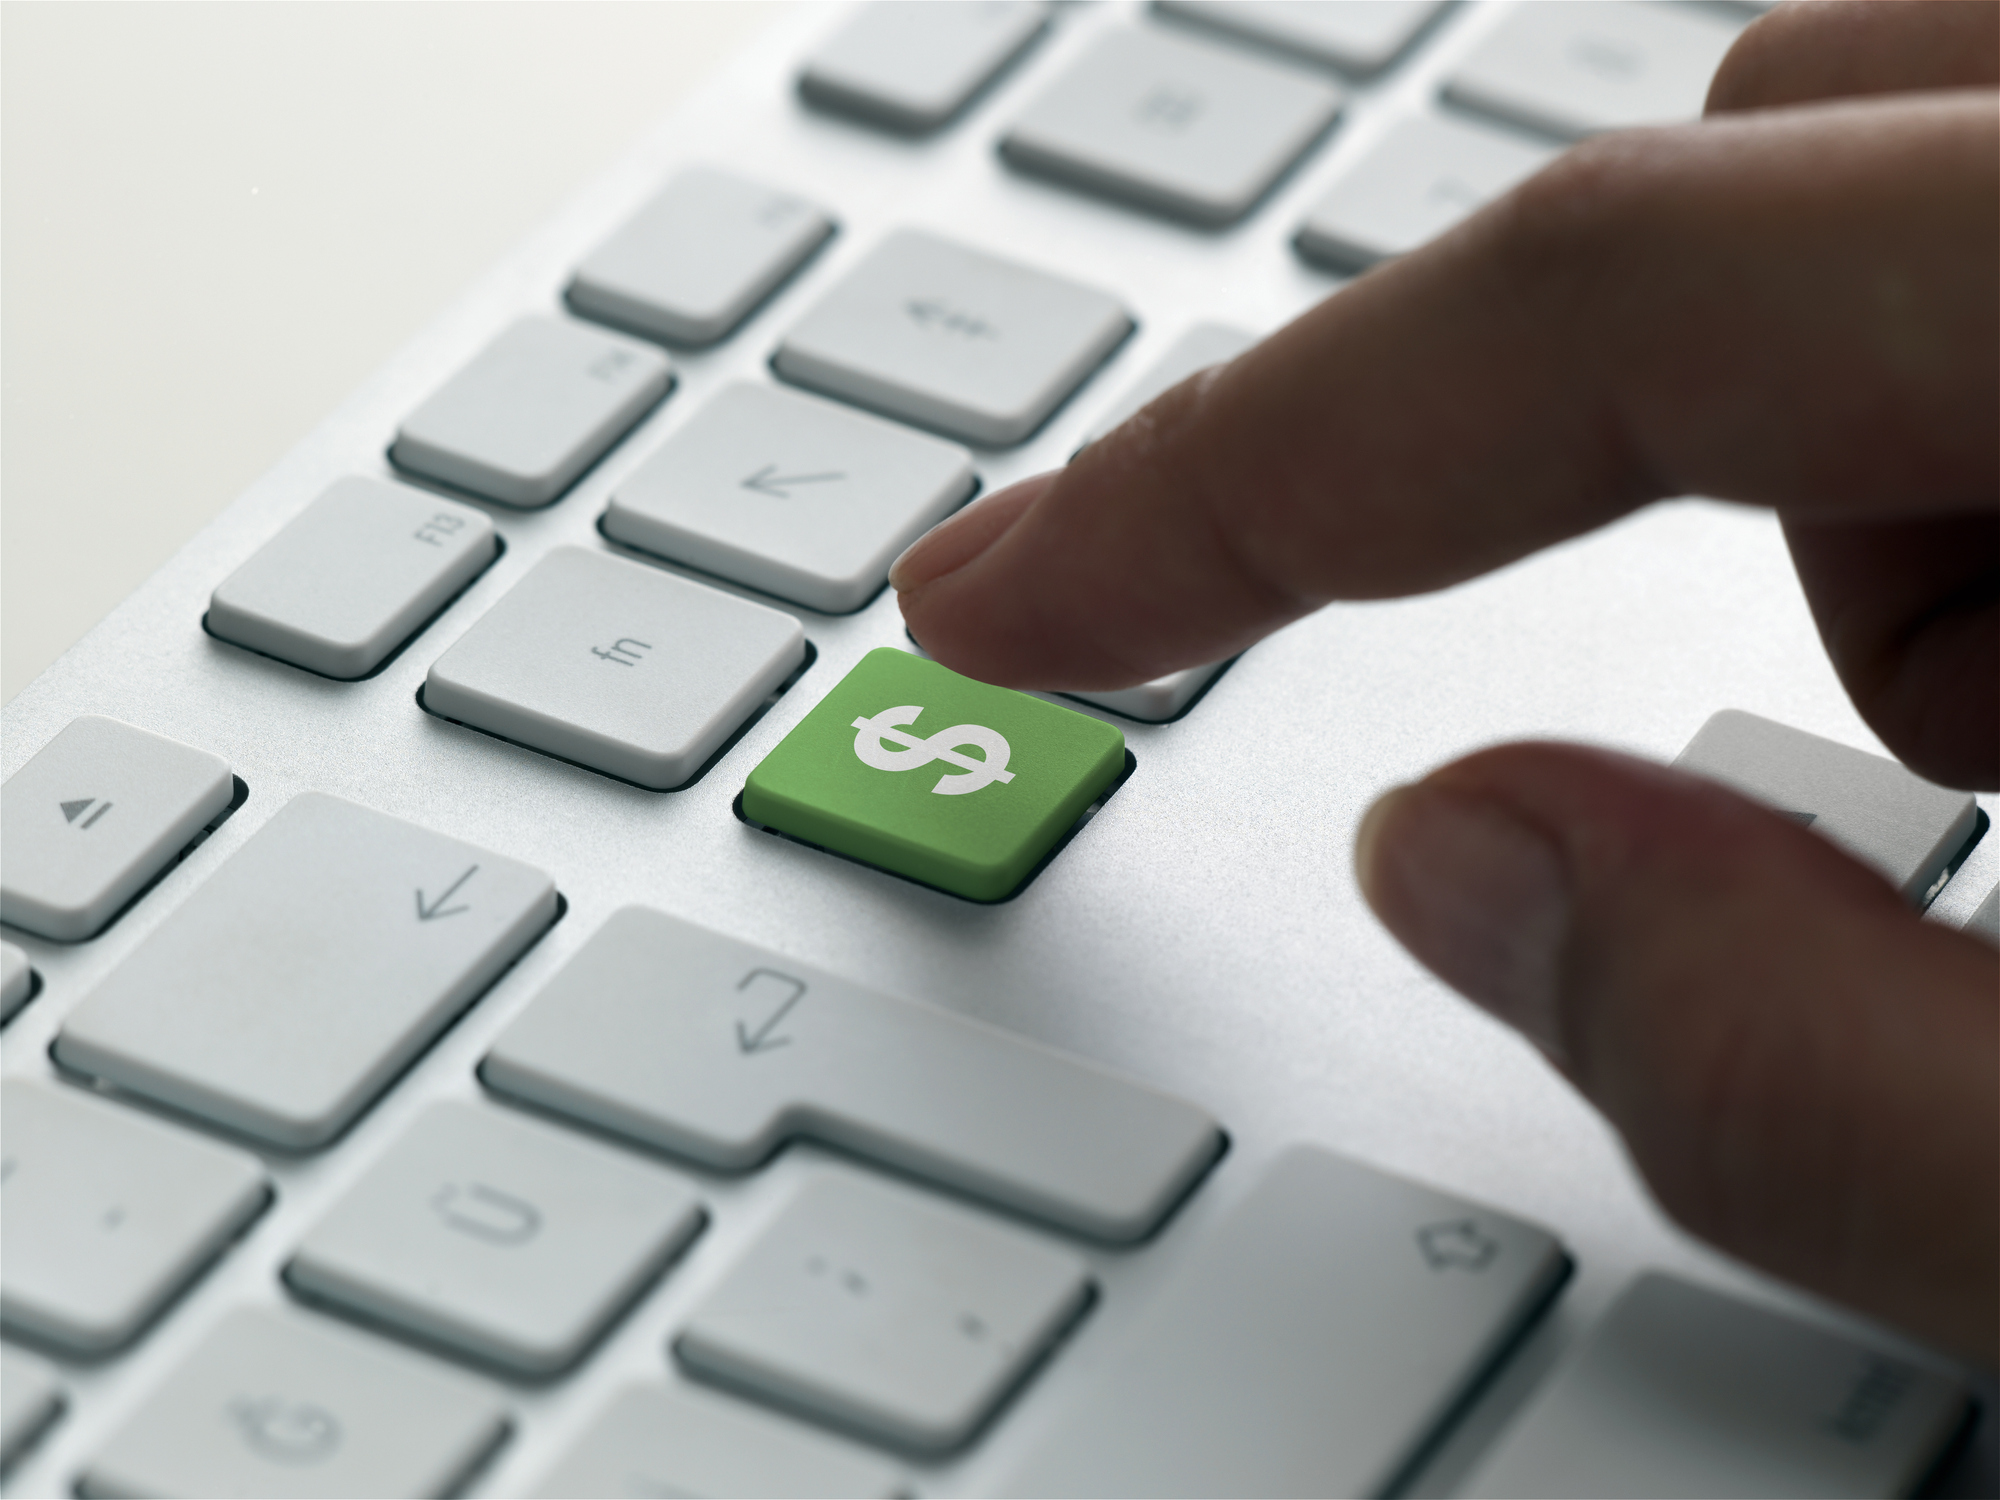 jari akan menekan tombol tanda dolar hijau pada keyboard, menandakan pengeluaran TI pada tahun 2022